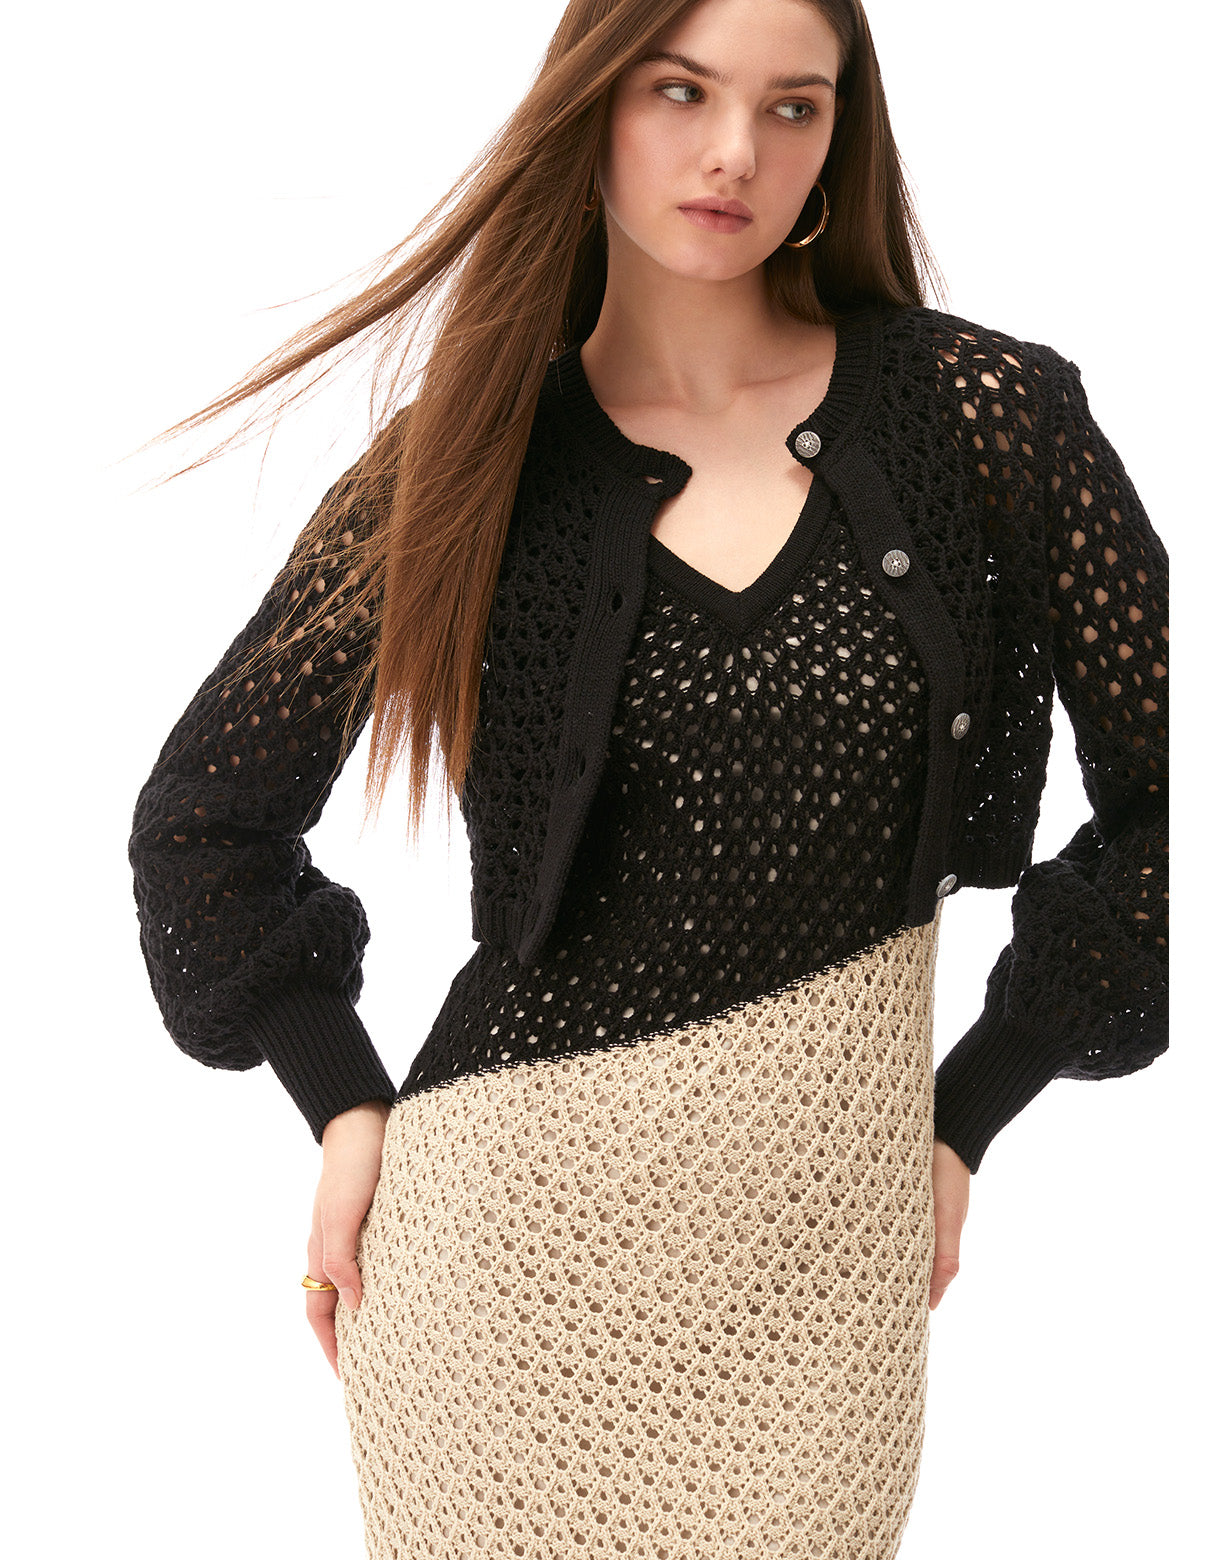 tori blouson sleeve cropped crochet cardi jet black - summer resort cardigans for women